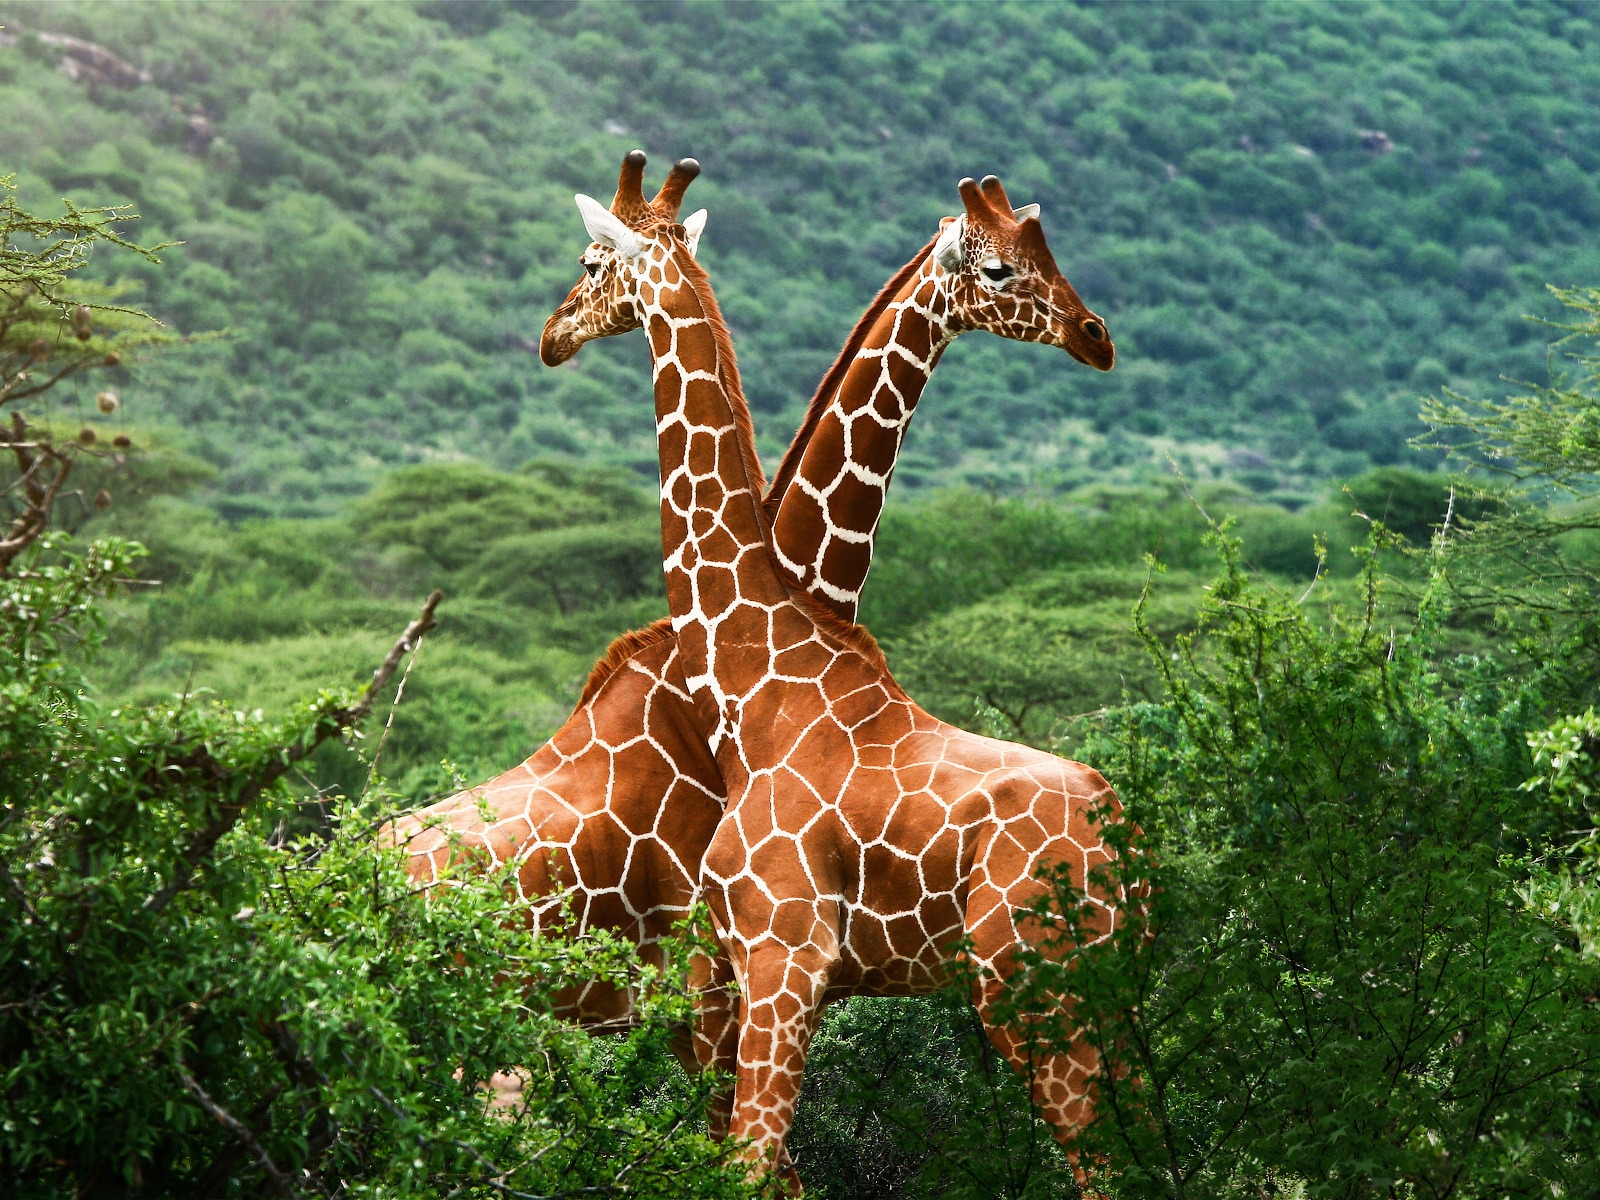 Giraffe Friends for 1600 x 1200 resolution